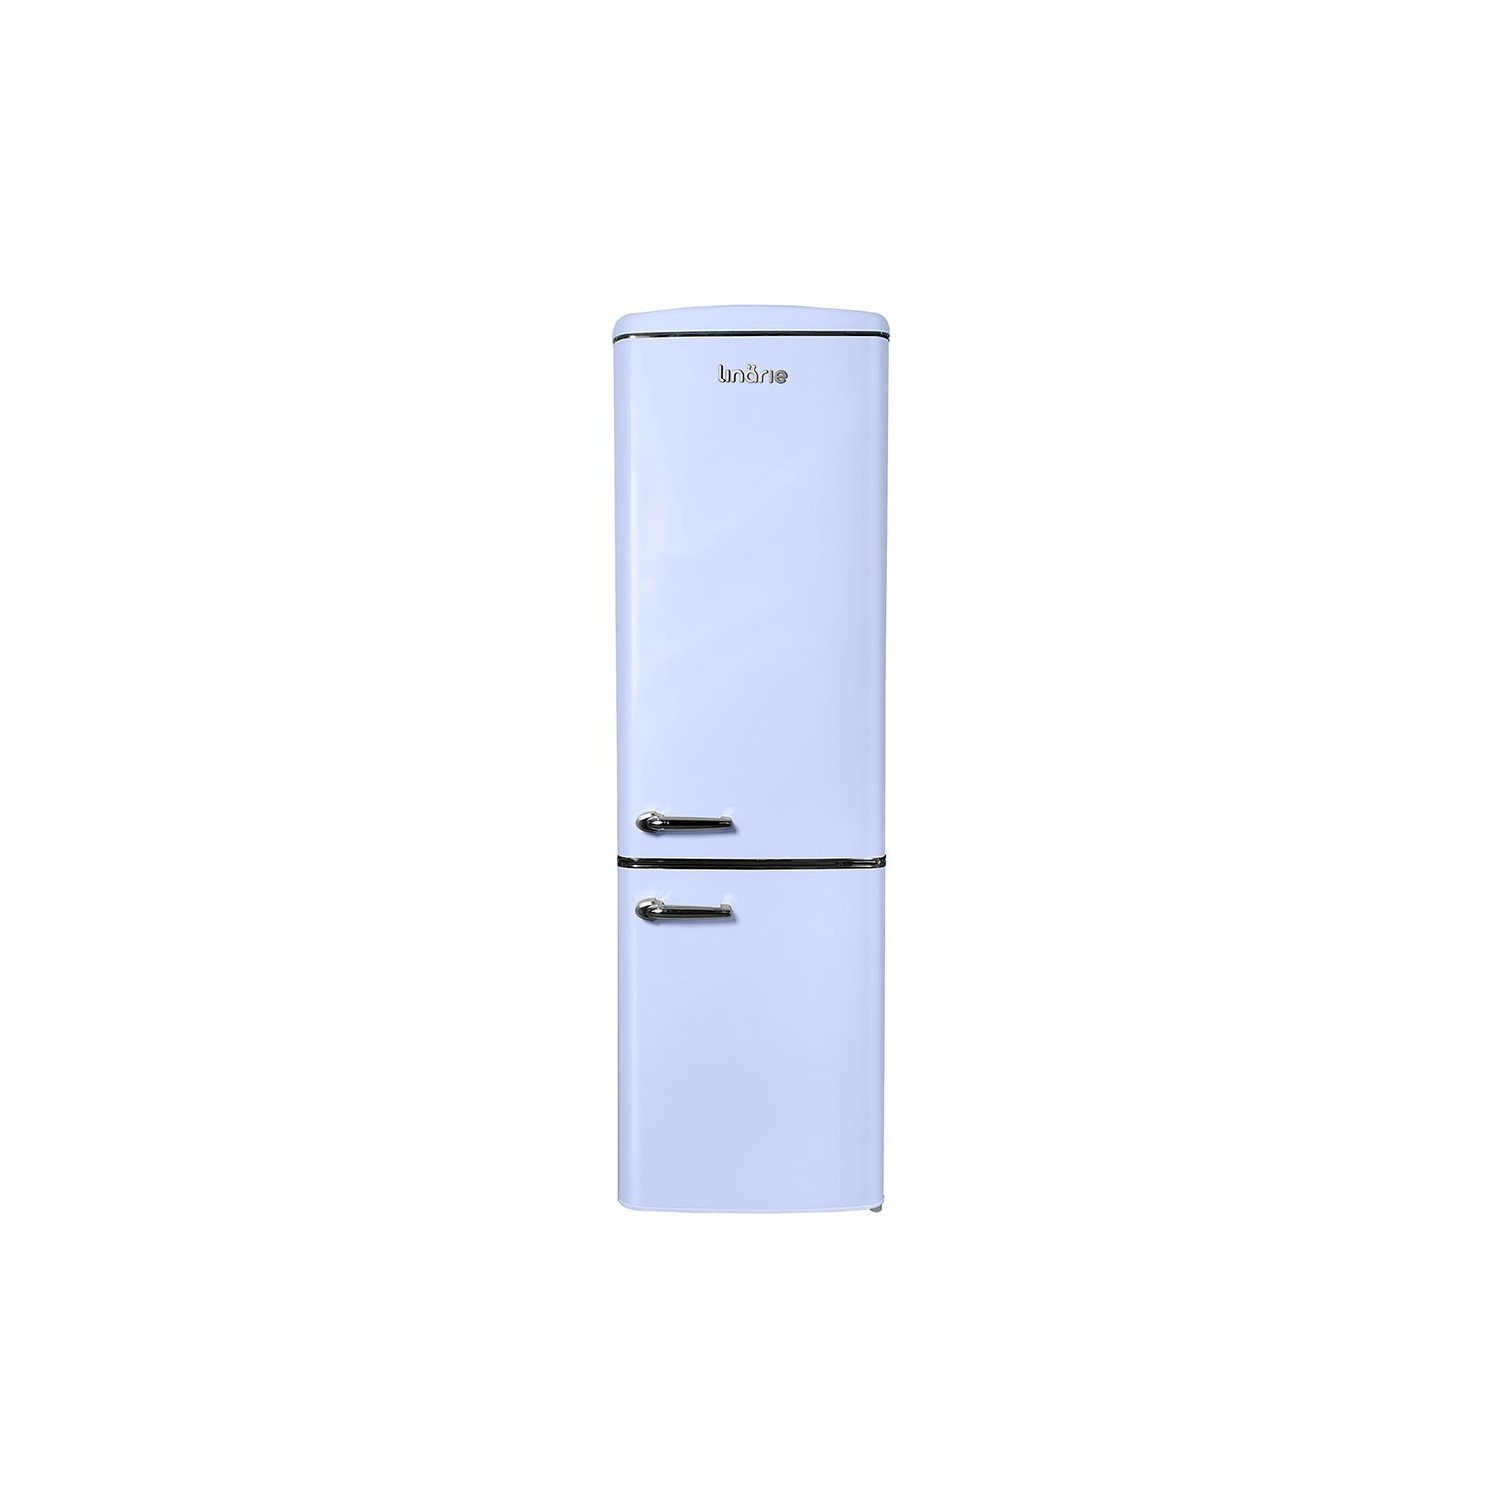 Réfrigérateur congélateur retro LJCO250BLUE 244 Litres Bleu